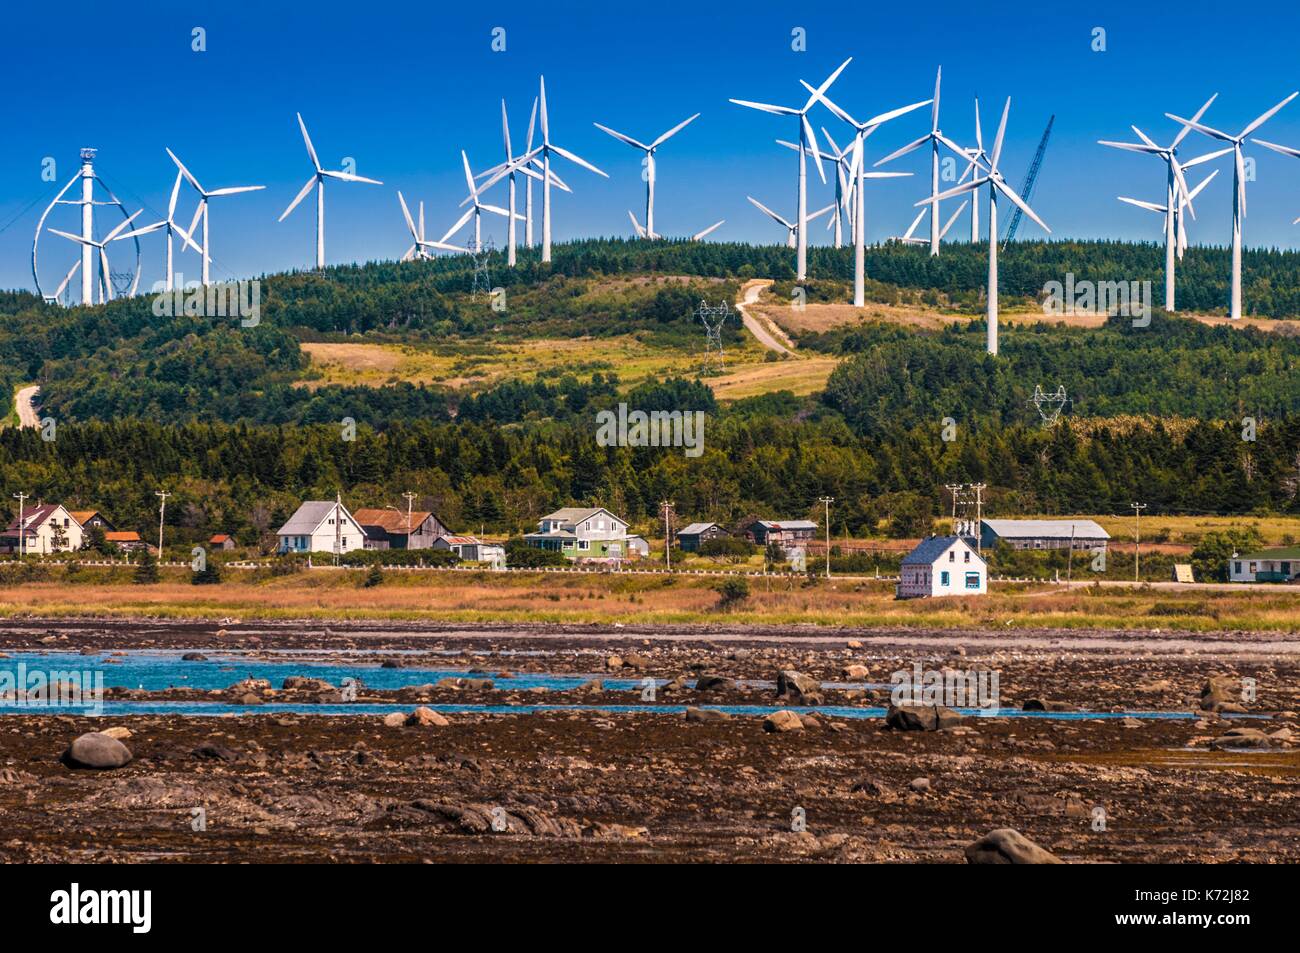 Le Canada, la province de Québec, GaspŽsie, Cap-Chat, Le Nordais wind farm  a une centaine d'éoliennes Eole y compris, les plus hautes du monde de l' éolienne verticale (110 m), un vestige de